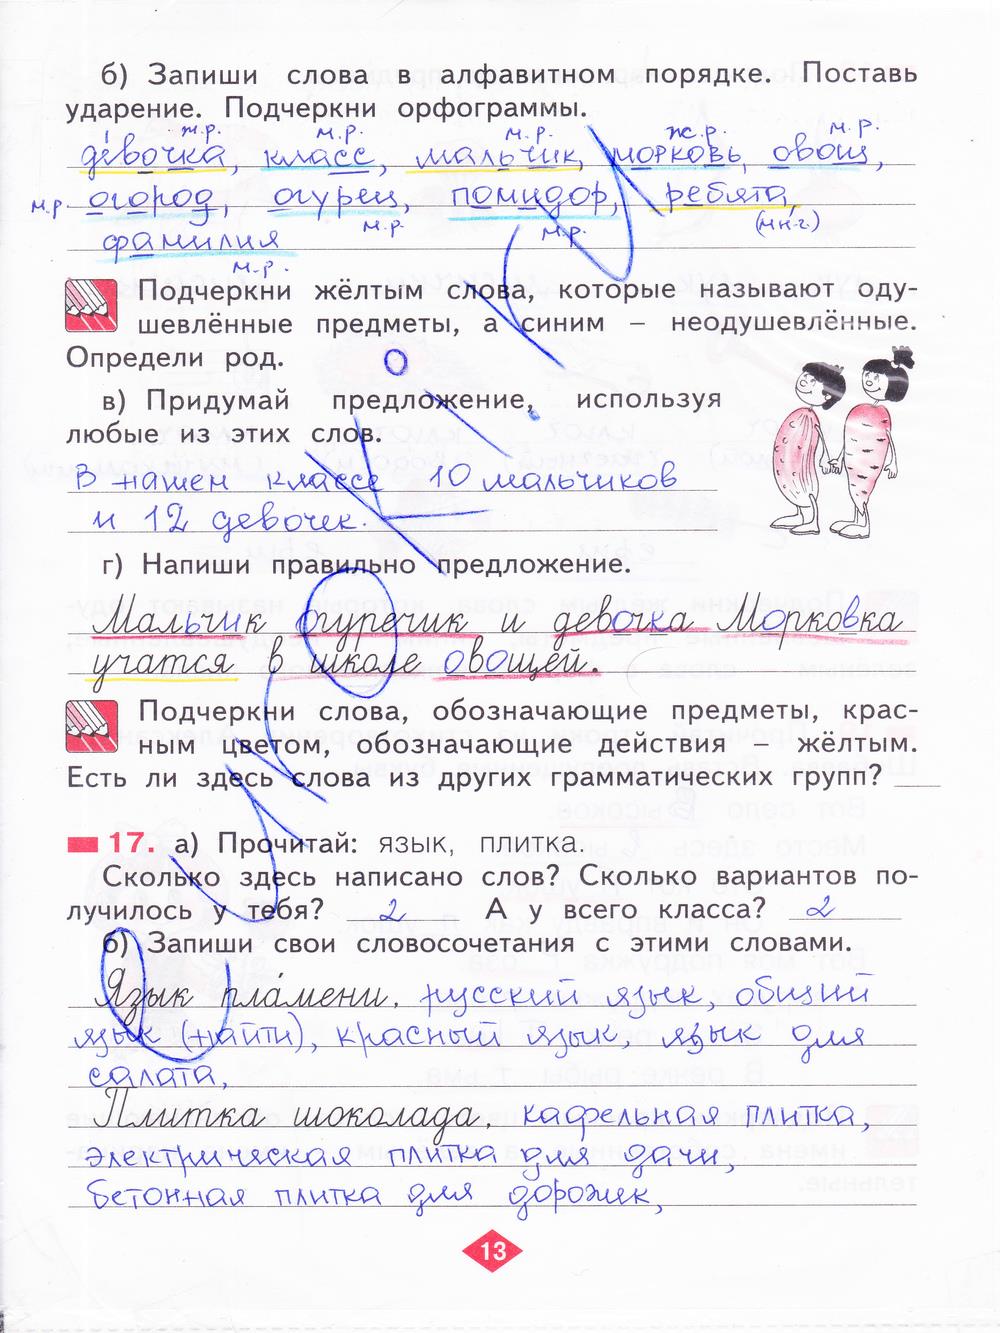 гдз 2 класс рабочая тетрадь часть 1 страница 13 русский язык Яковлева